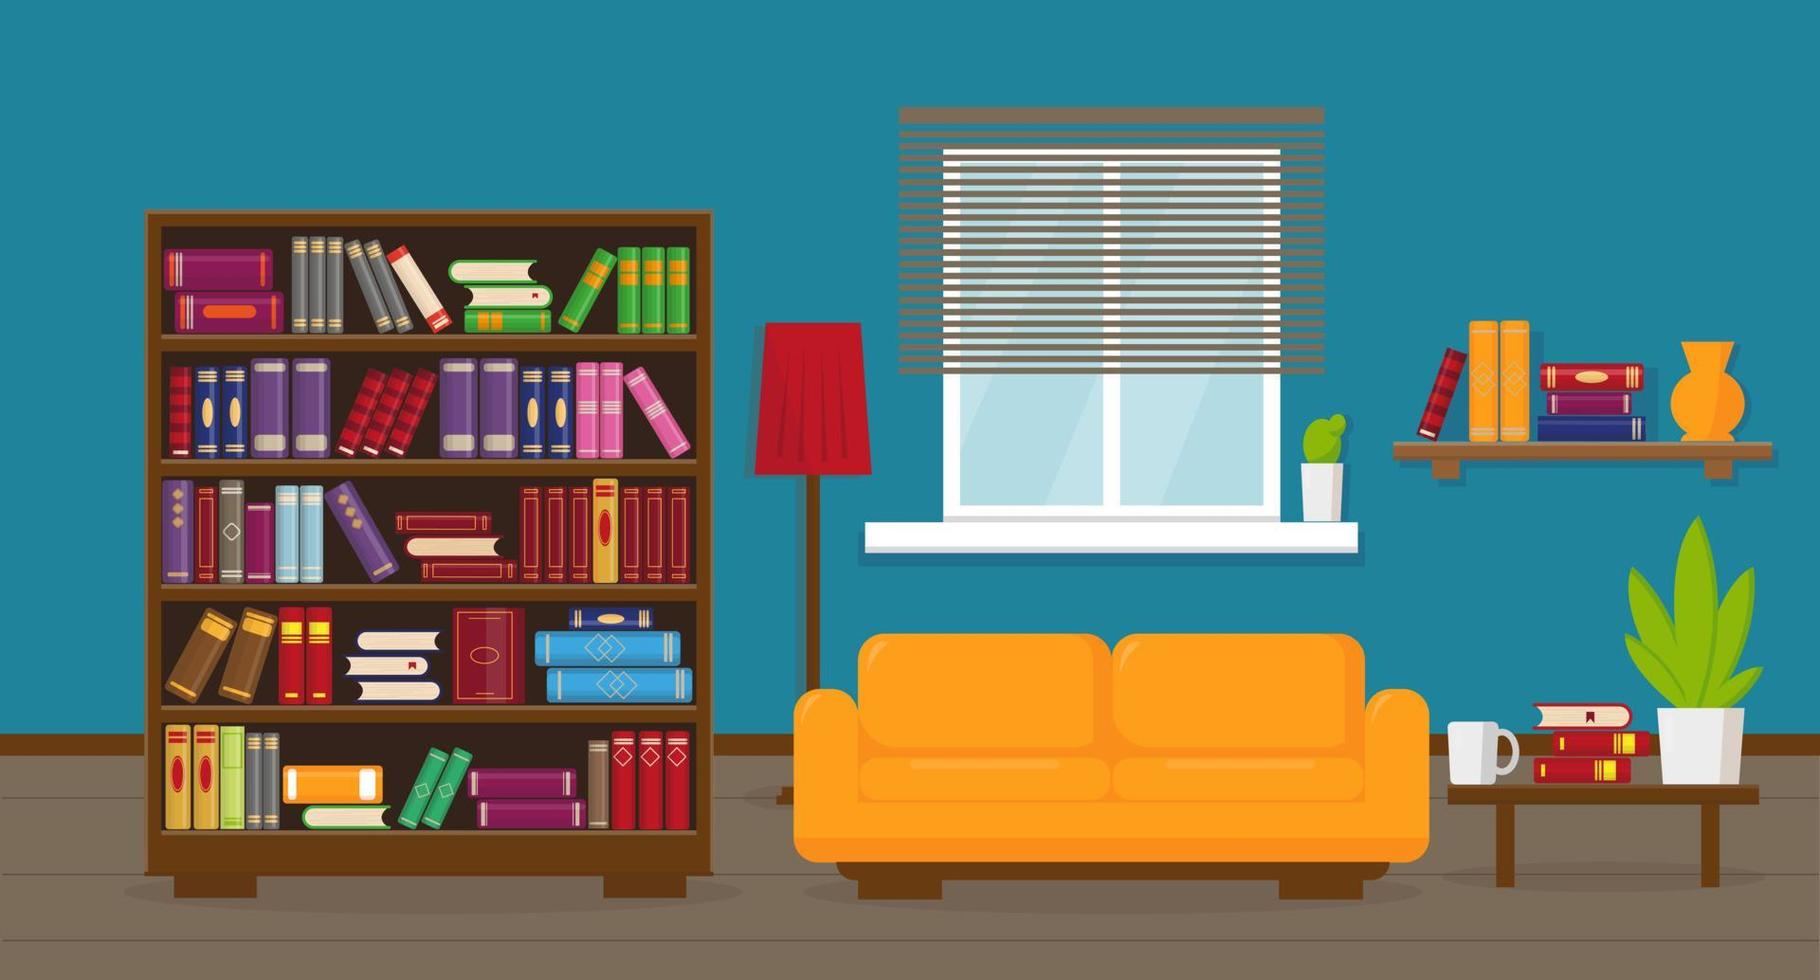 salón o apartamento con estantería, sofá, mesa, lámpara, estanterías y ventana. concepto de interiores. vector